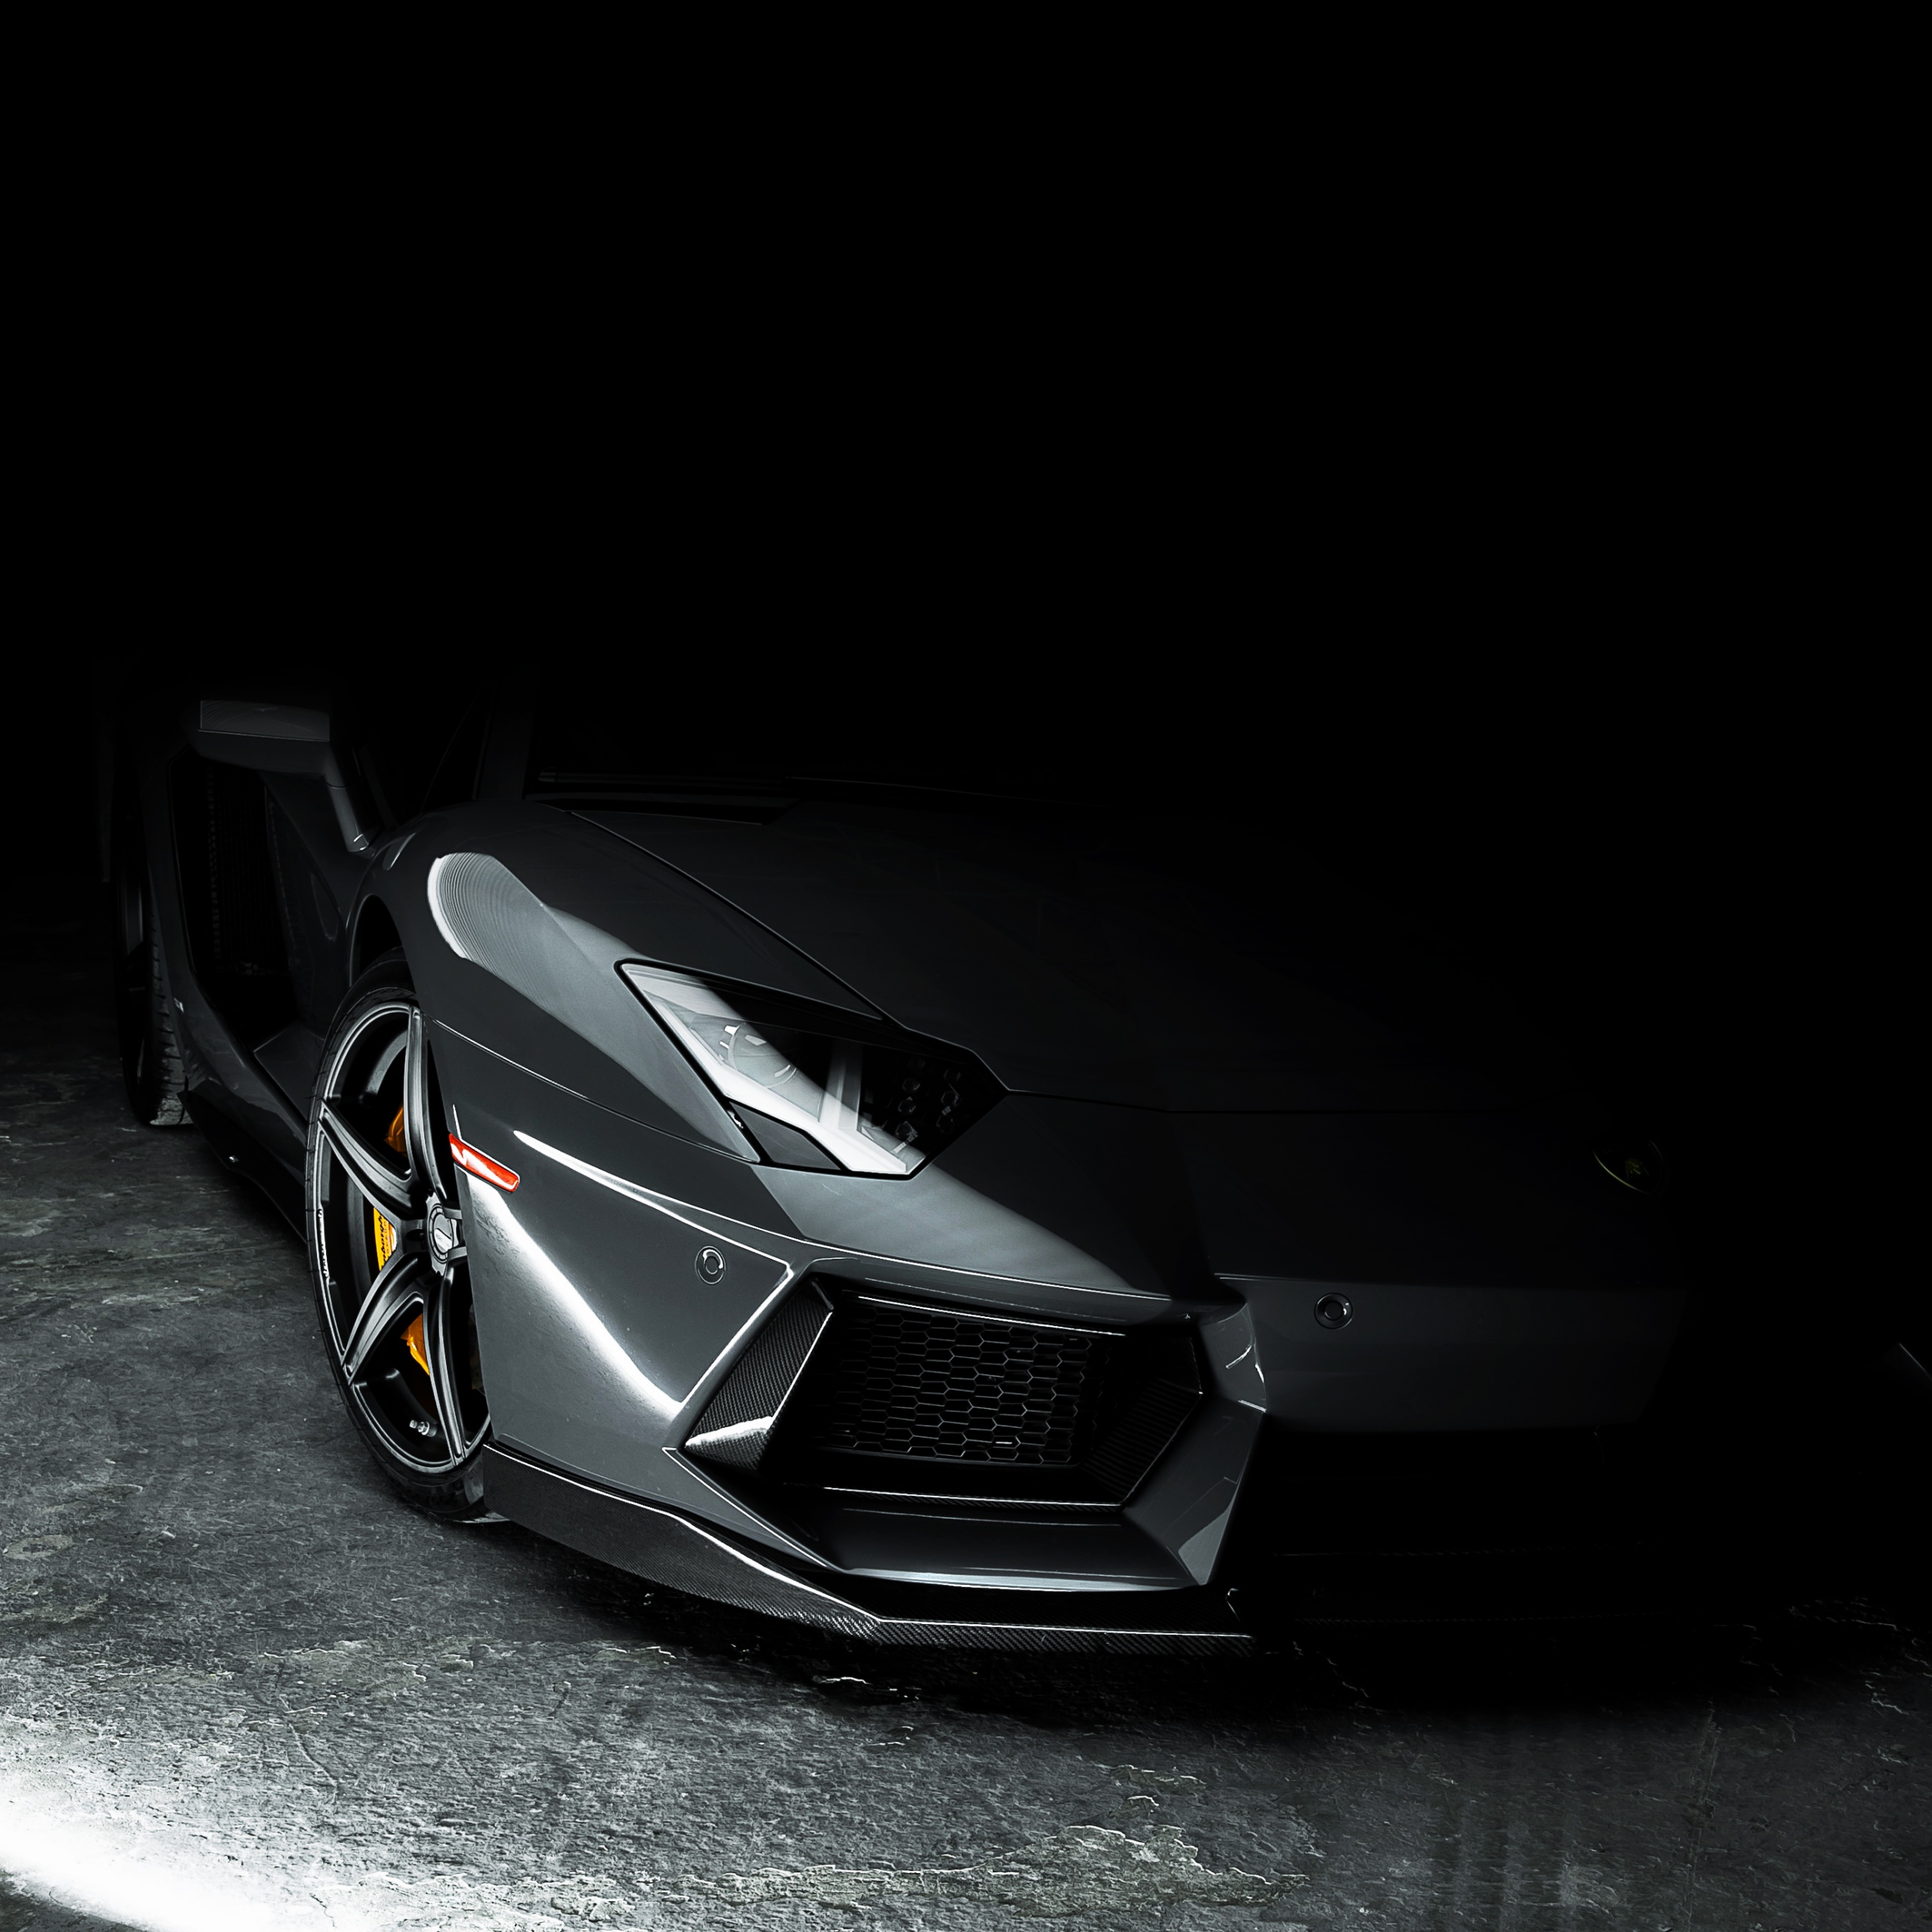 Nếu bạn là một fan của Lamborghini Aventador, hình nền này sẽ khiến bạn mê mẩn ngay từ cái nhìn đầu tiên. Với màu xám và đường nét tinh tế, hình ảnh chiếc xe hơi này trông quá chất lượng và sang trọng. Hãy ngắm nhìn nó trên nền tối để cảm nhận vẻ đẹp hoàn hảo của nó.